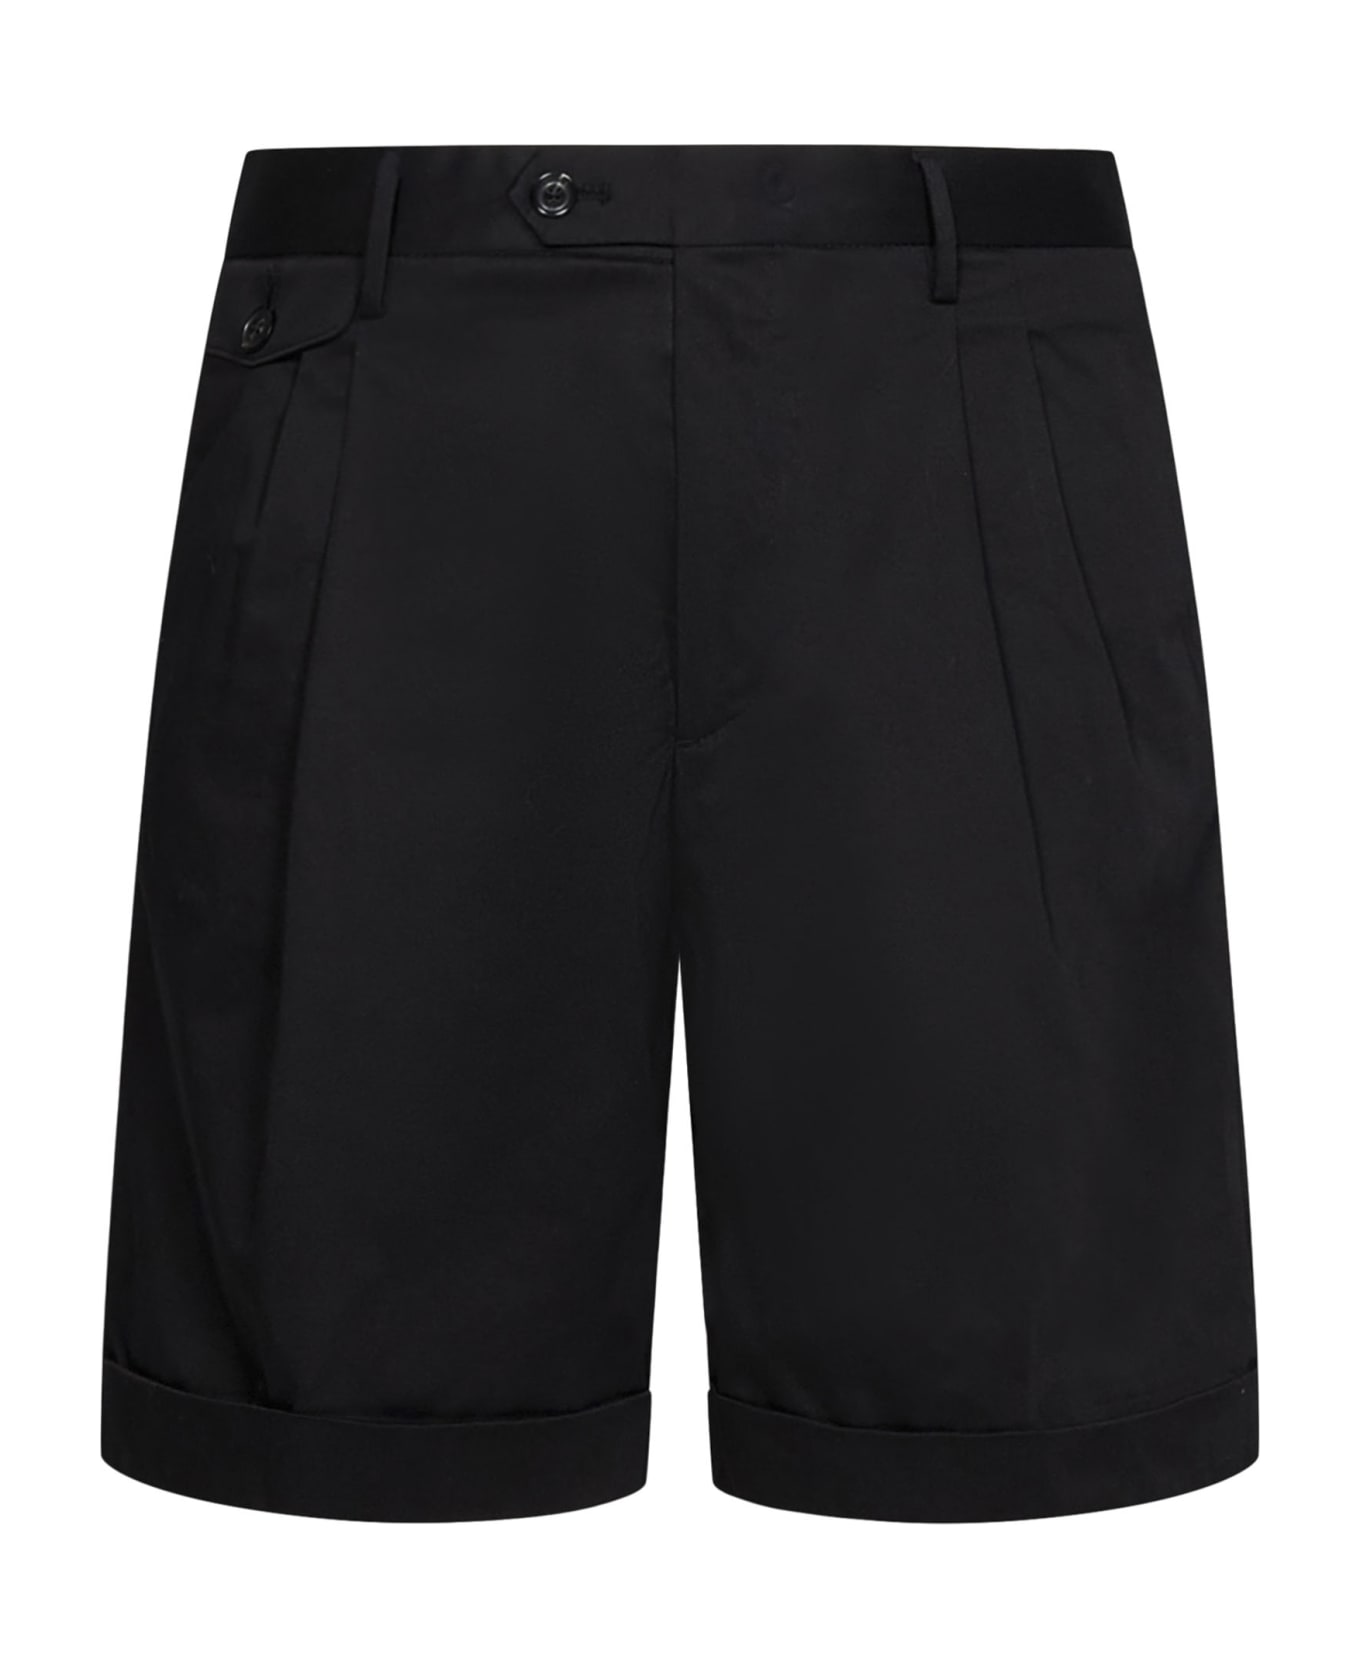 Lardini Shorts - Black